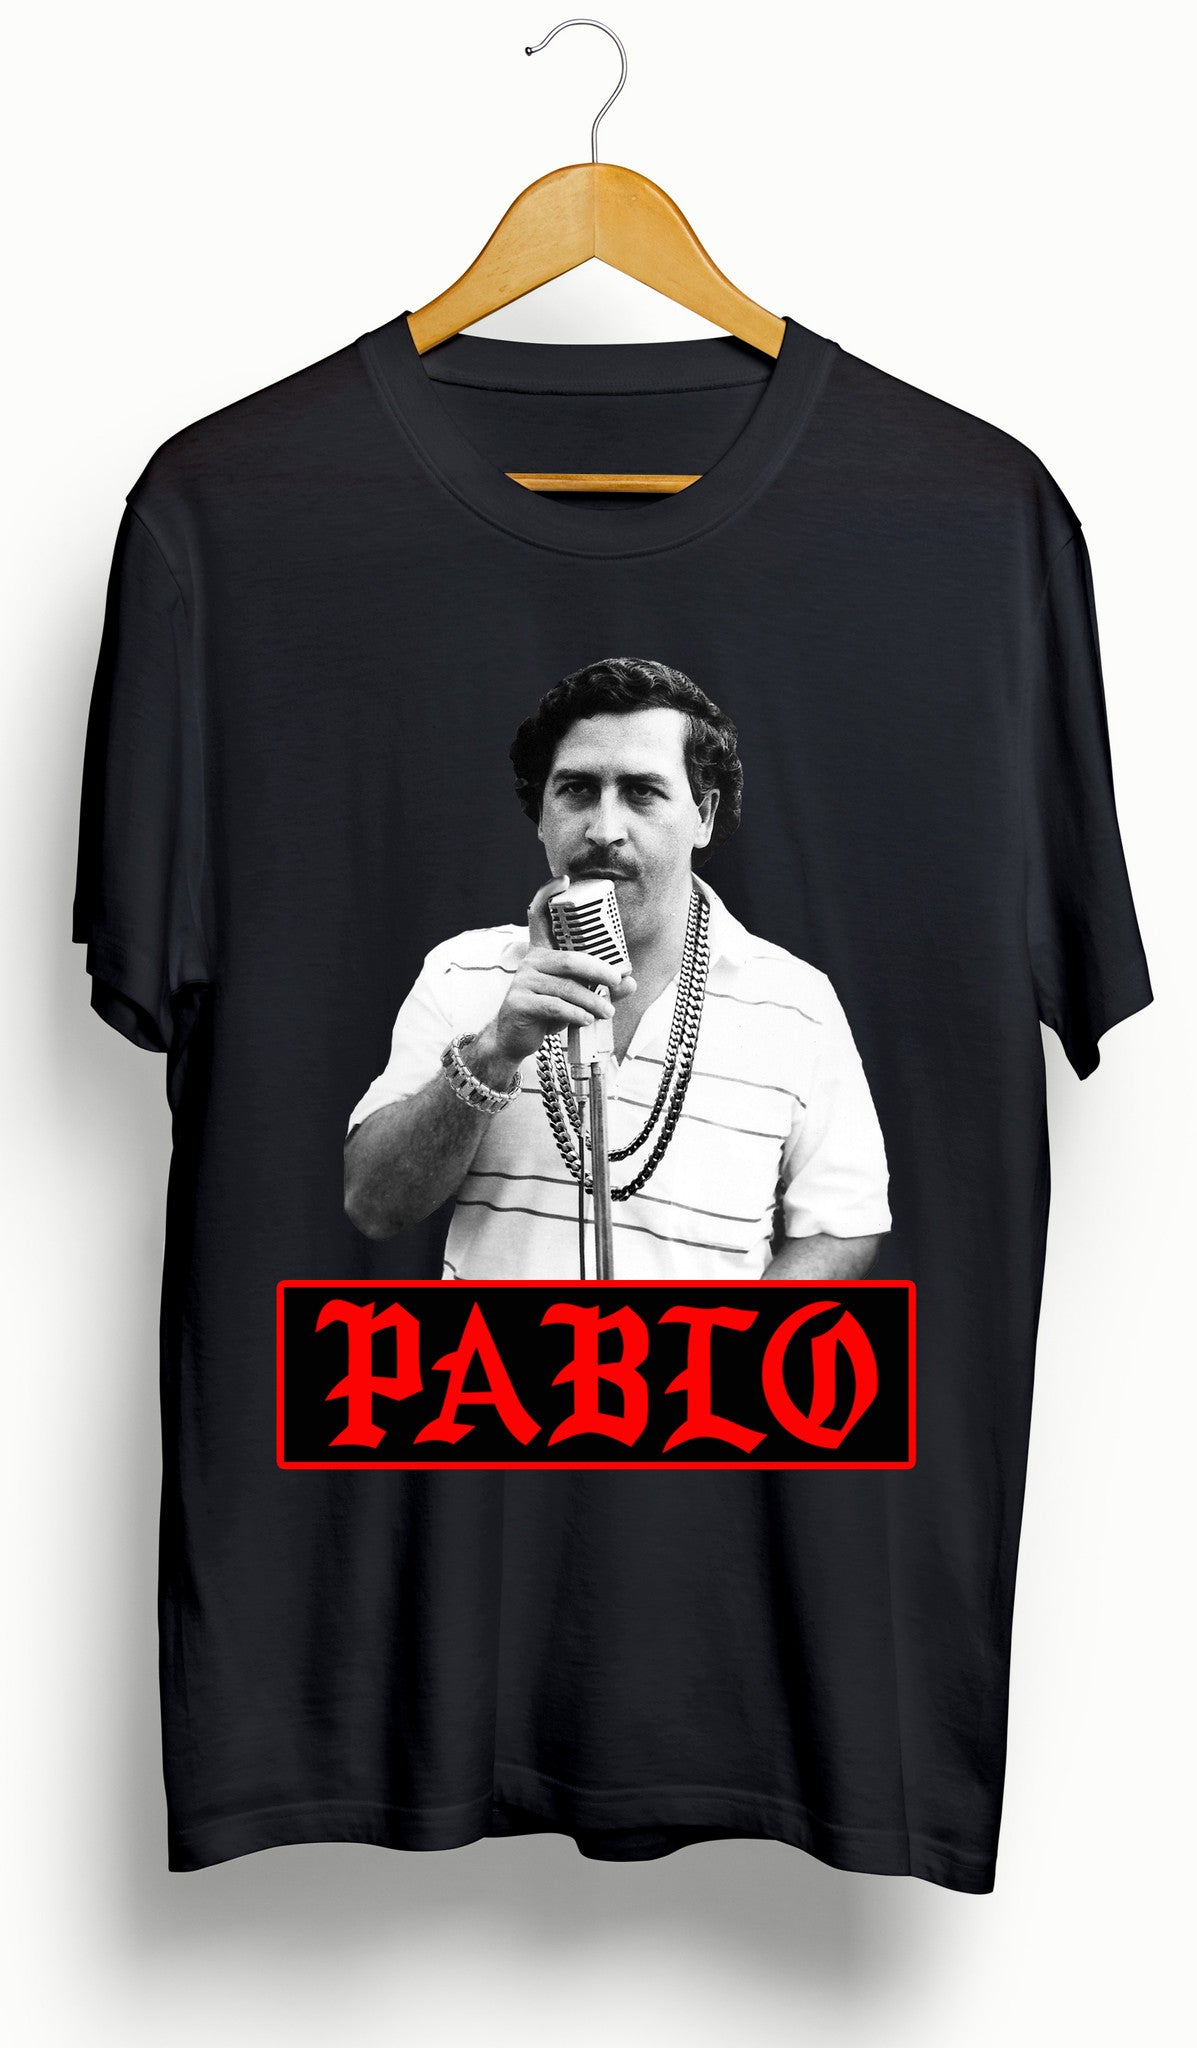 yeezy pablo shirt